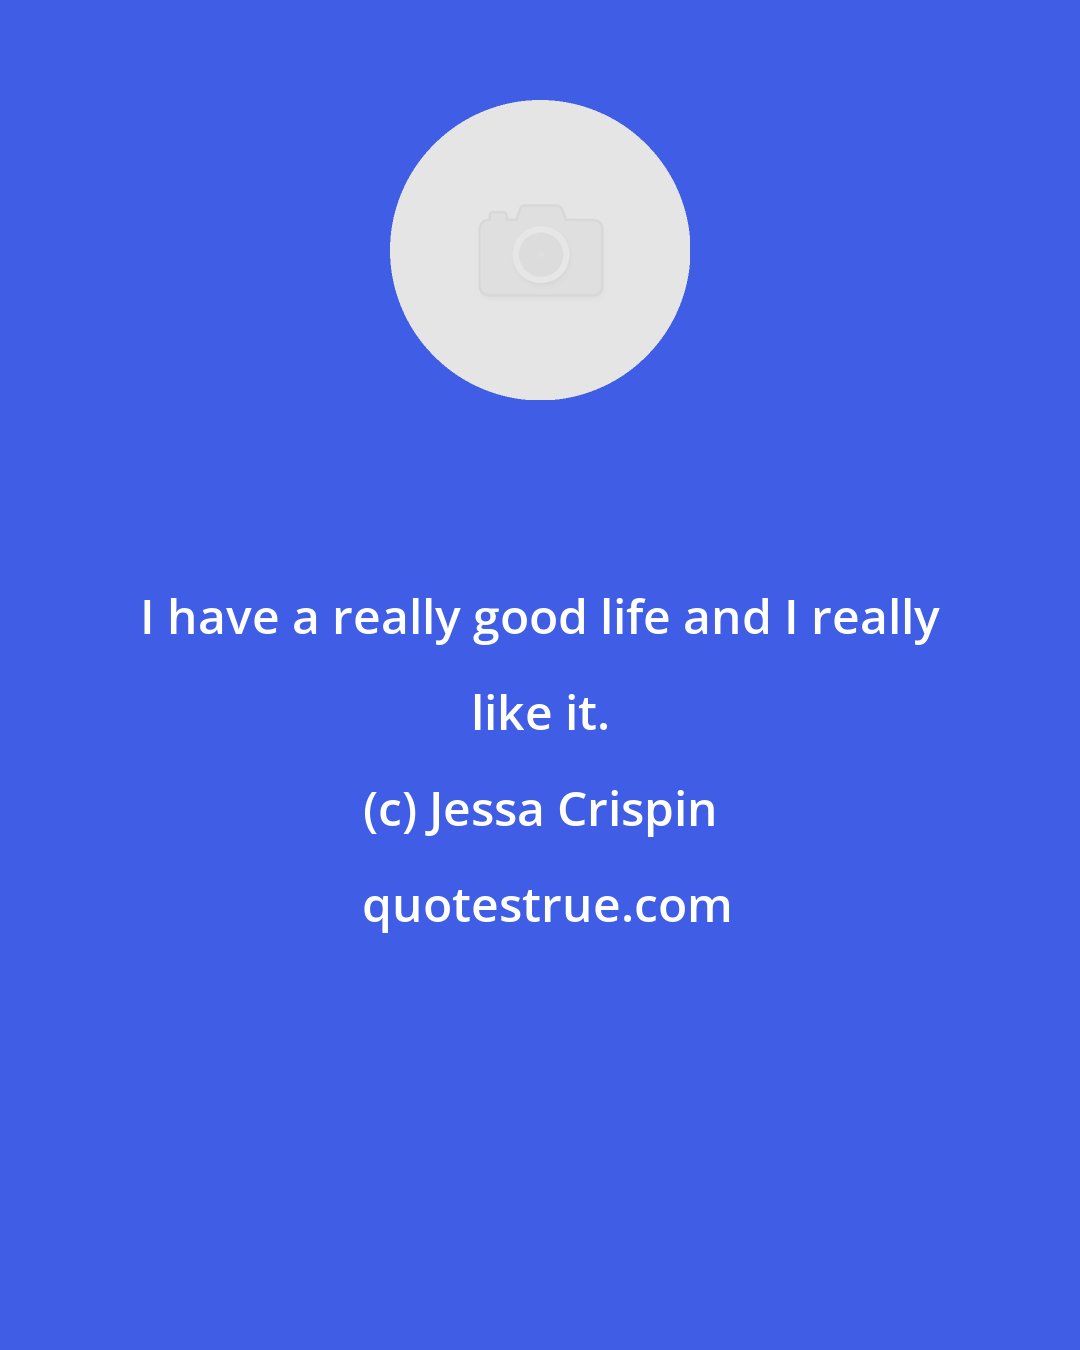 Jessa Crispin: I have a really good life and I really like it.